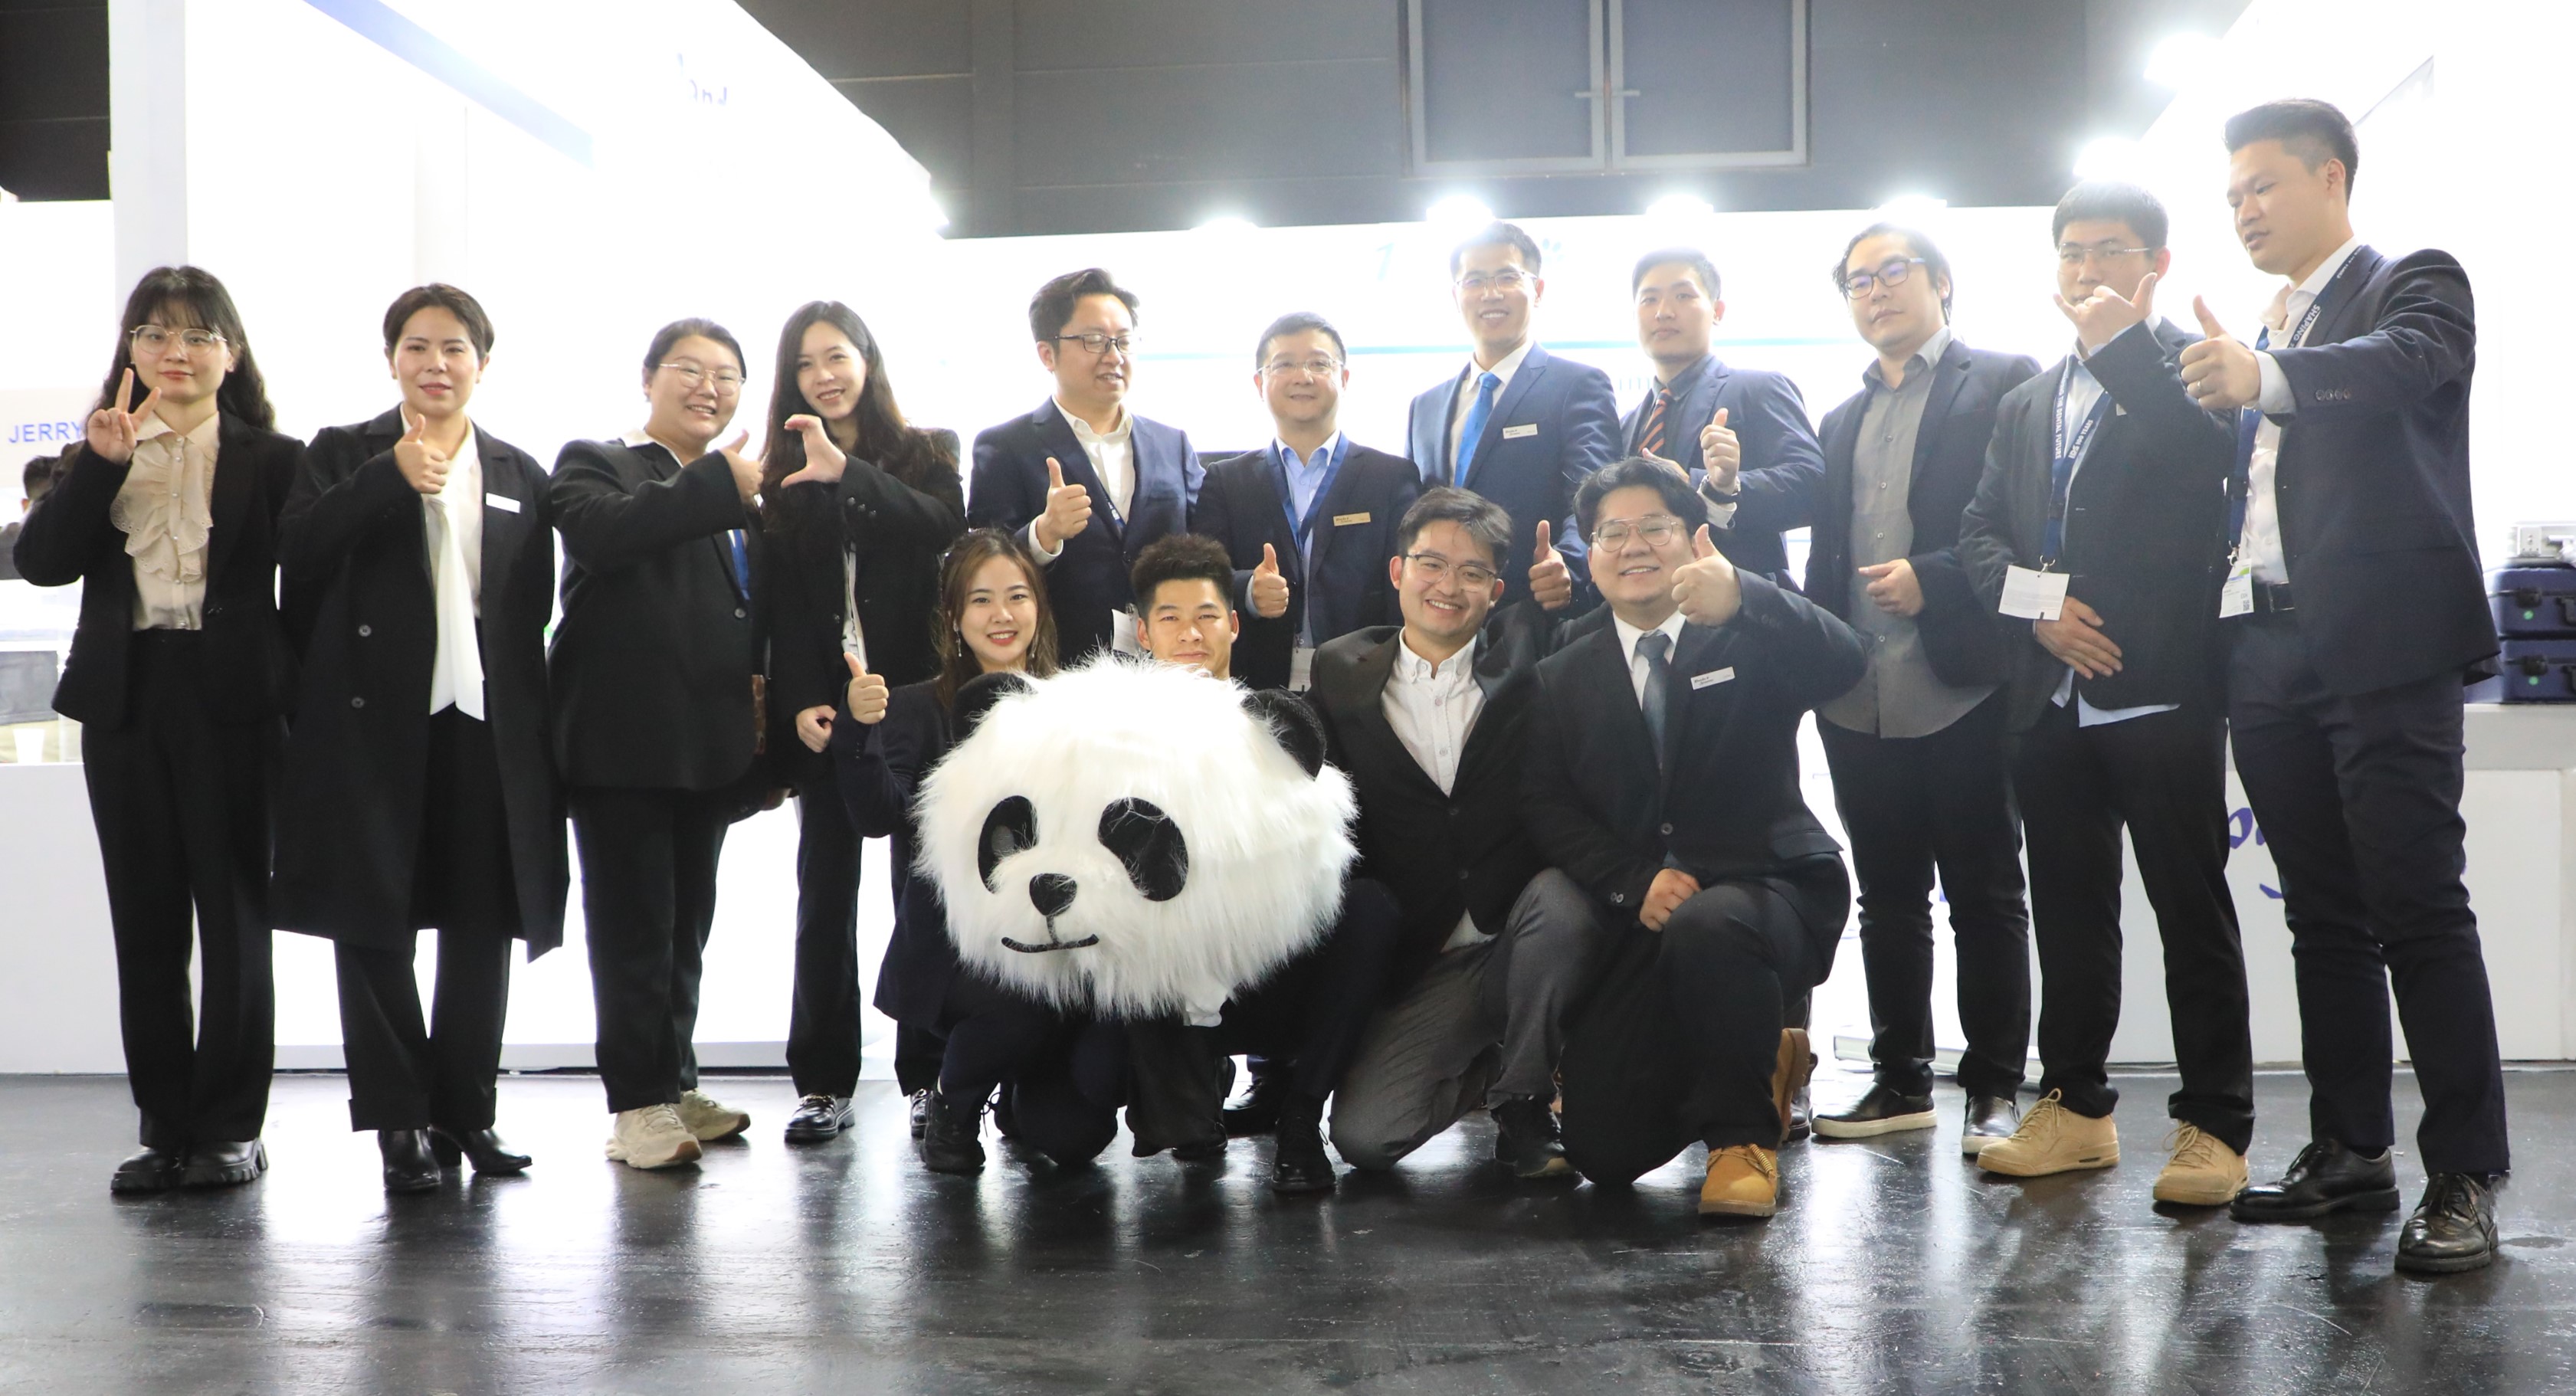 Panda Scanner presentó el escáner intraoral inteligente PANDA en la IDS